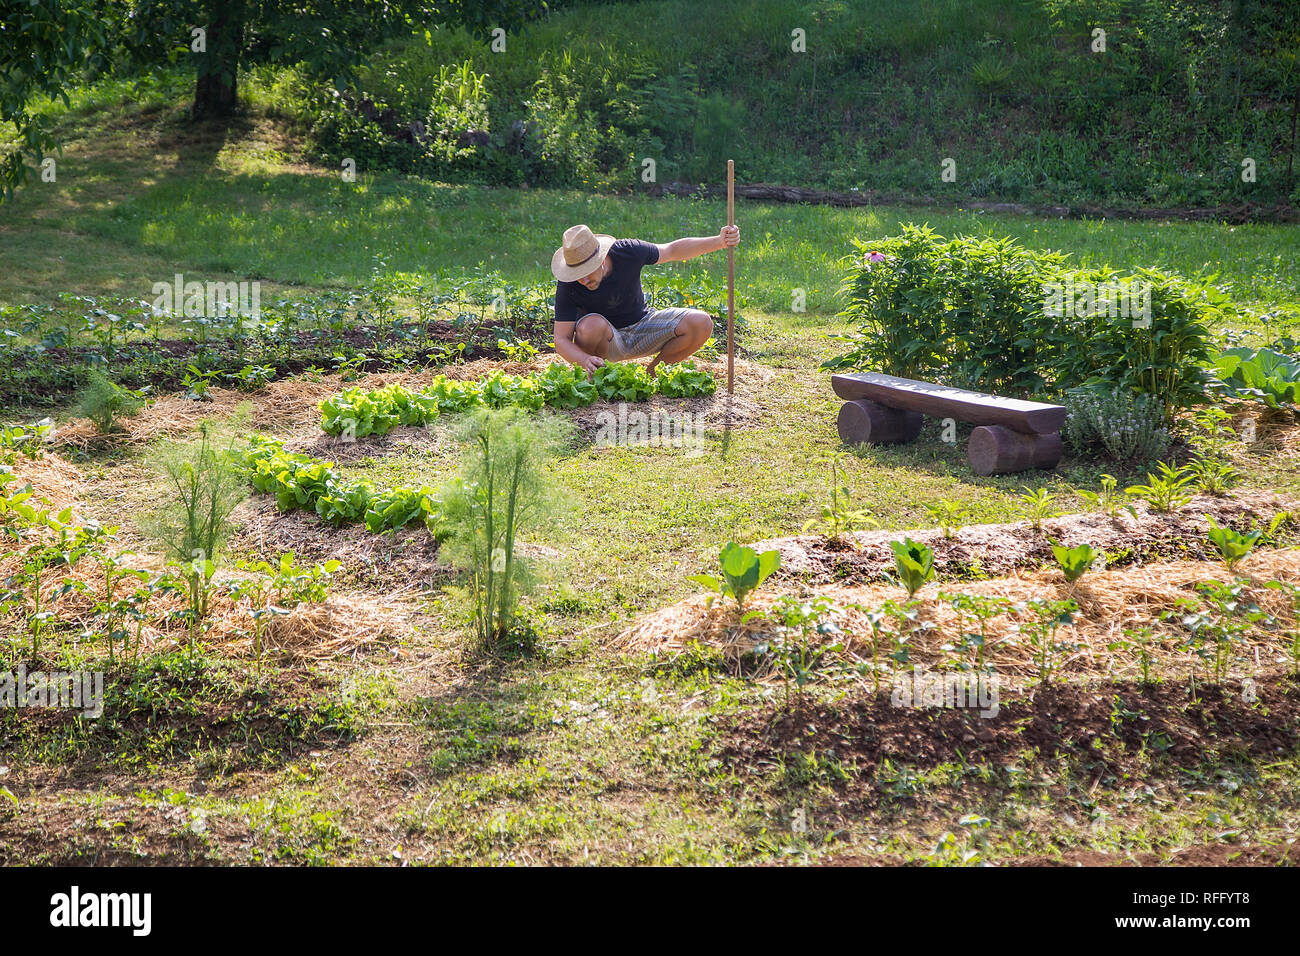 Junger Mann mit Hut in einem Heim aufgewachsen Gemüsegarten Arbeiten Stockfoto